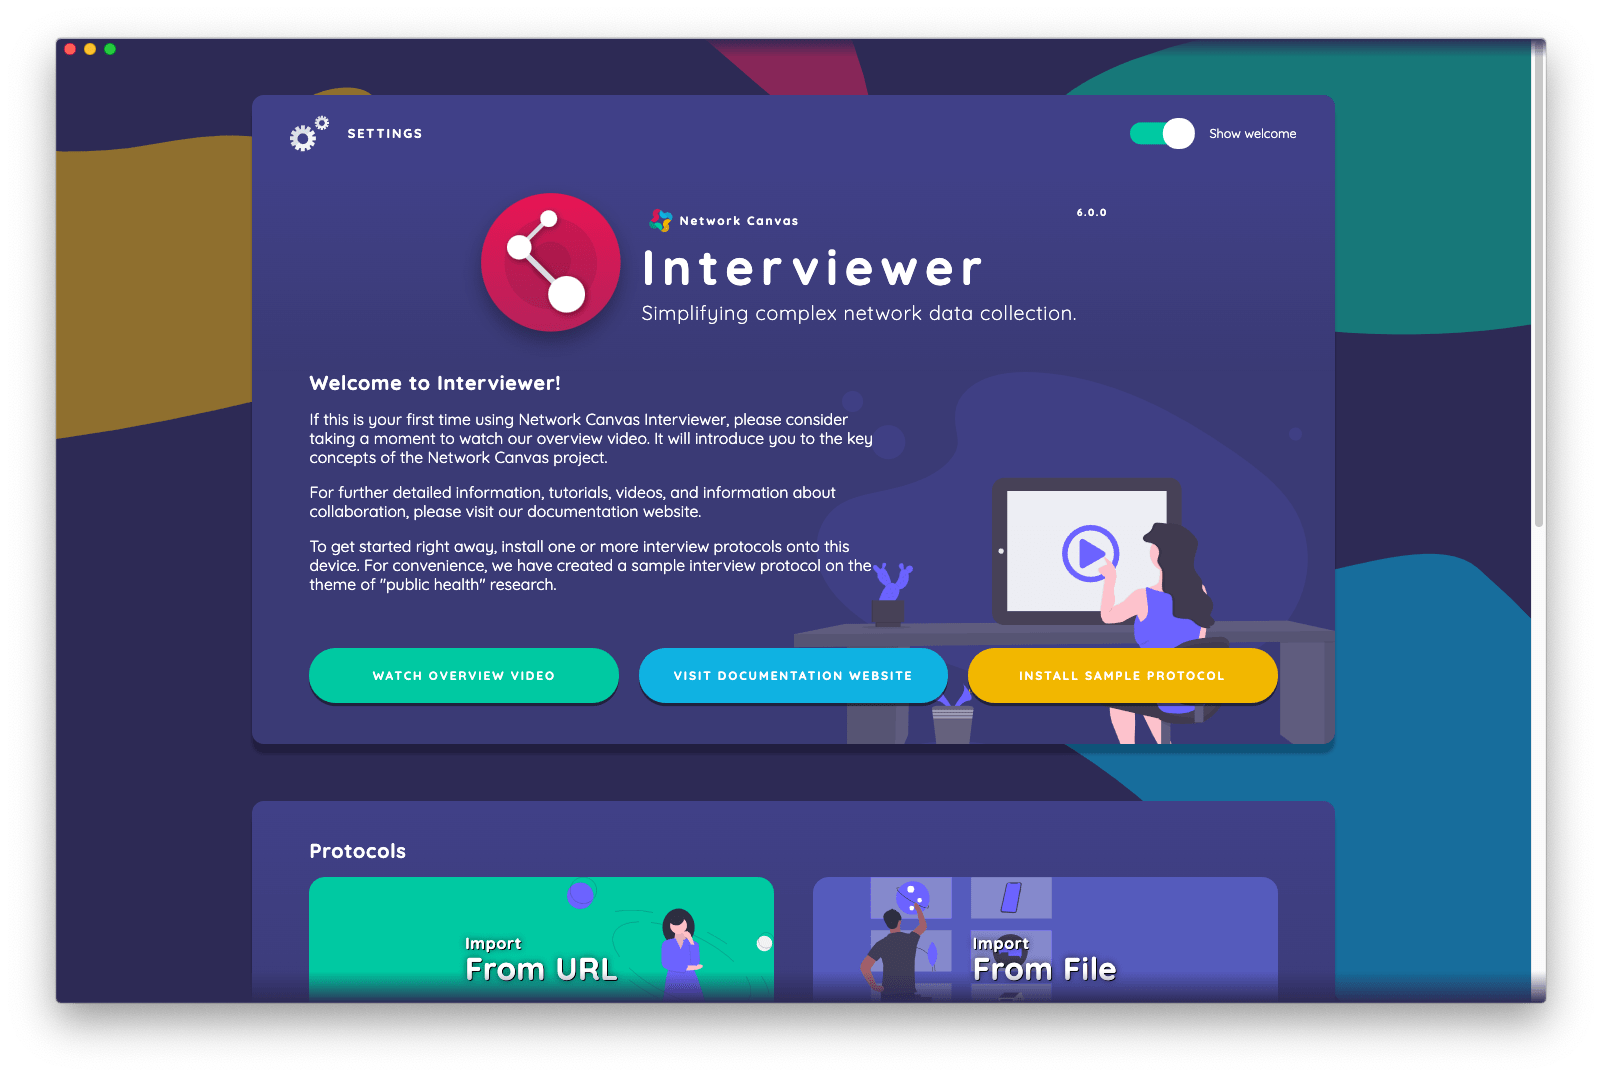 The Interviewer start screen